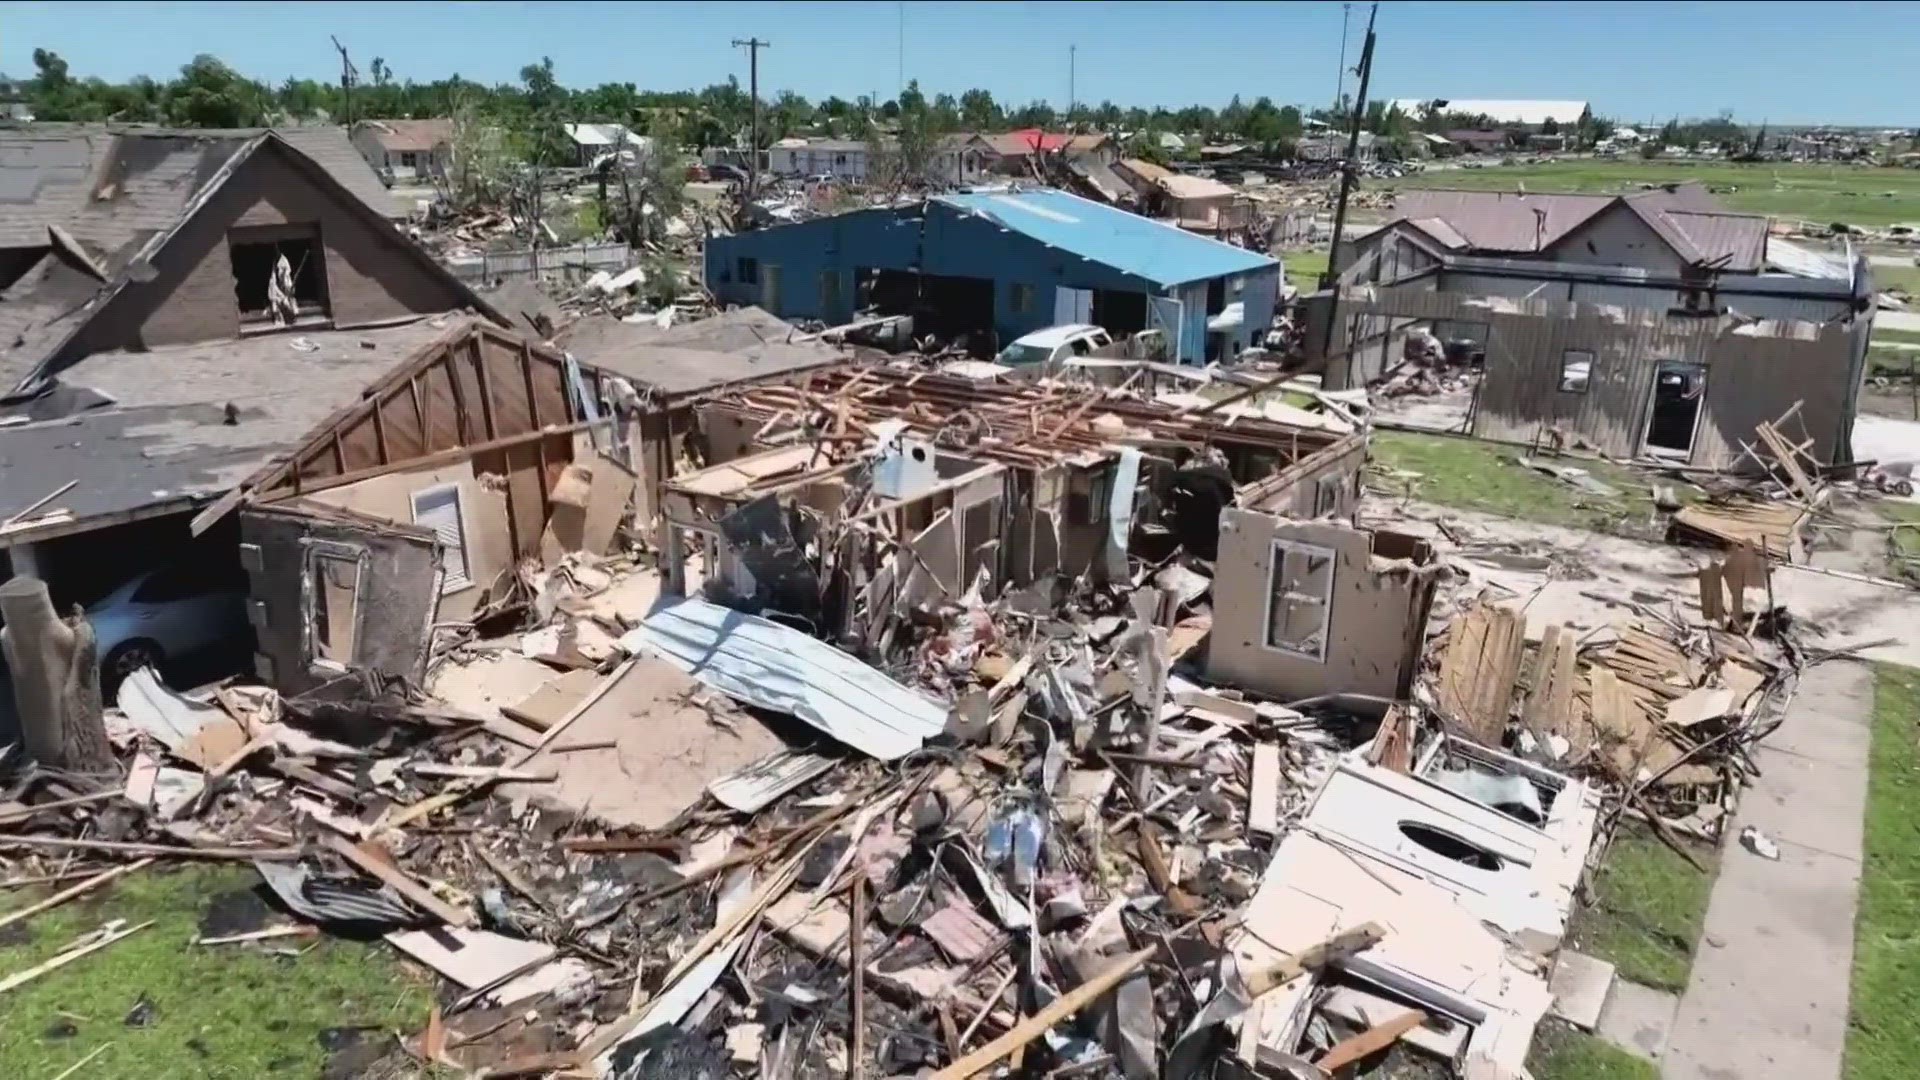 Perryton, Texas tornado Gov. Abbott signs disaster declaration